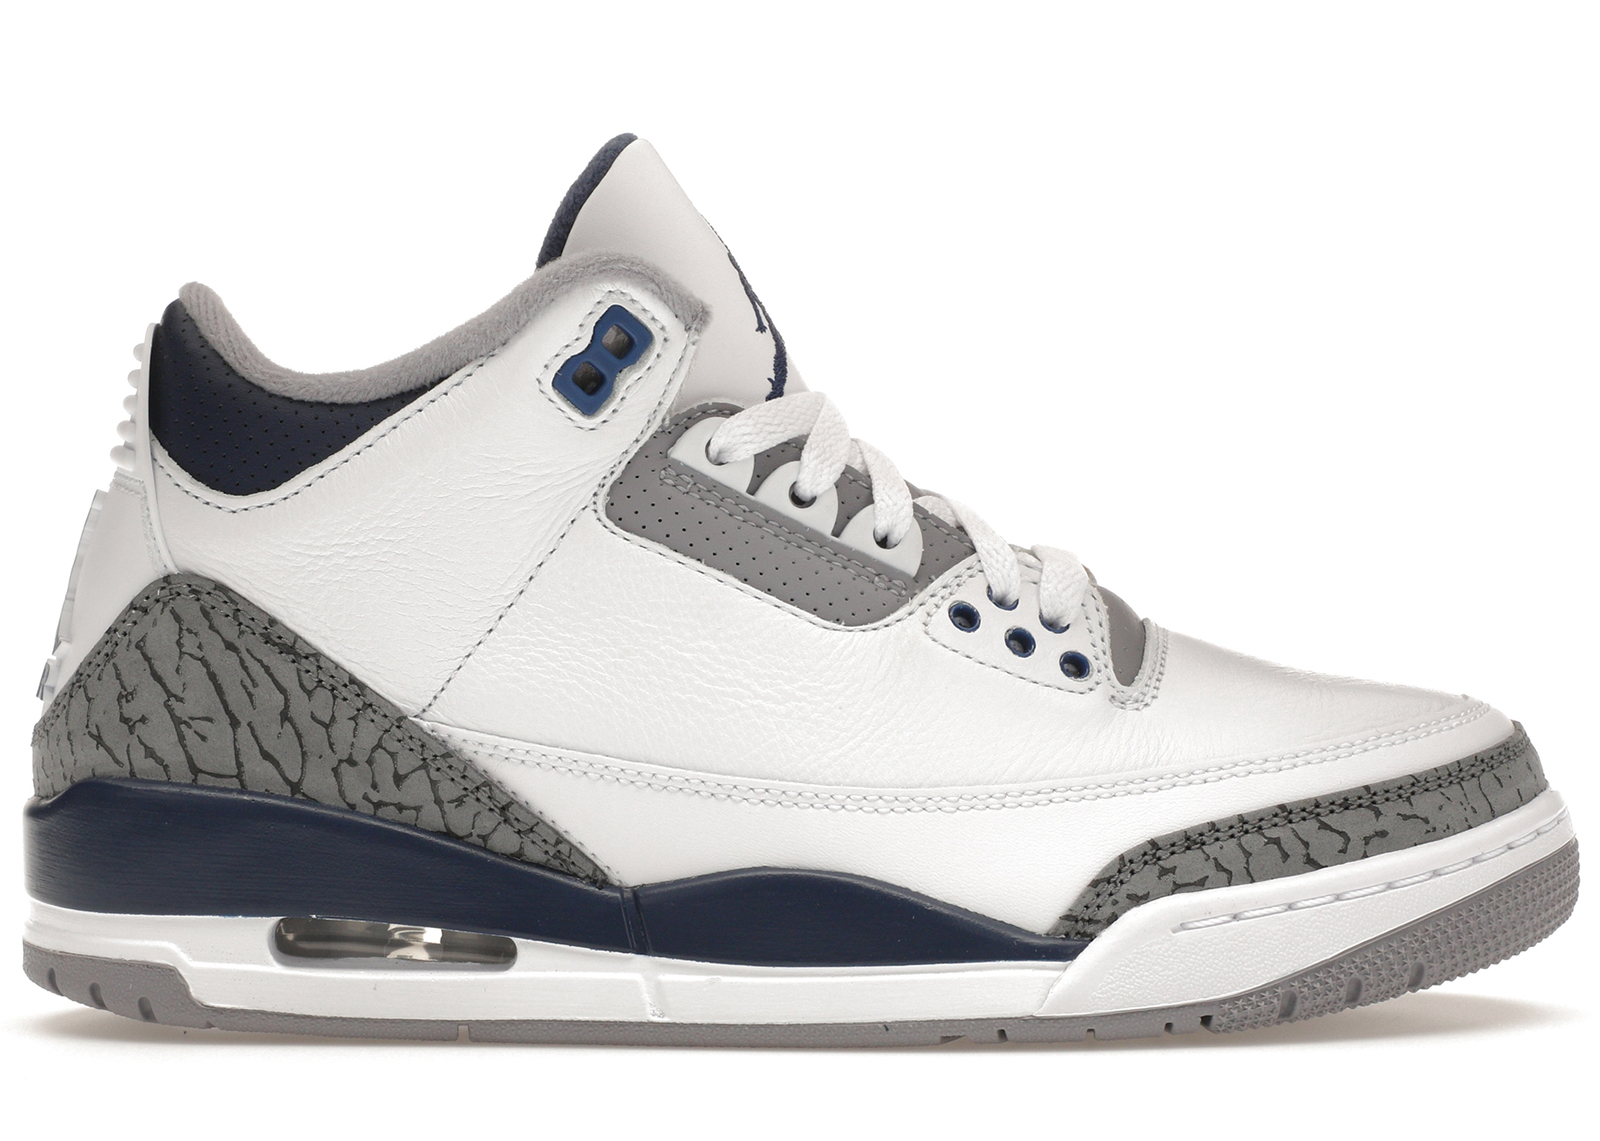 Buy Air Jordan 3 Shoes & New Sneakers - StockX